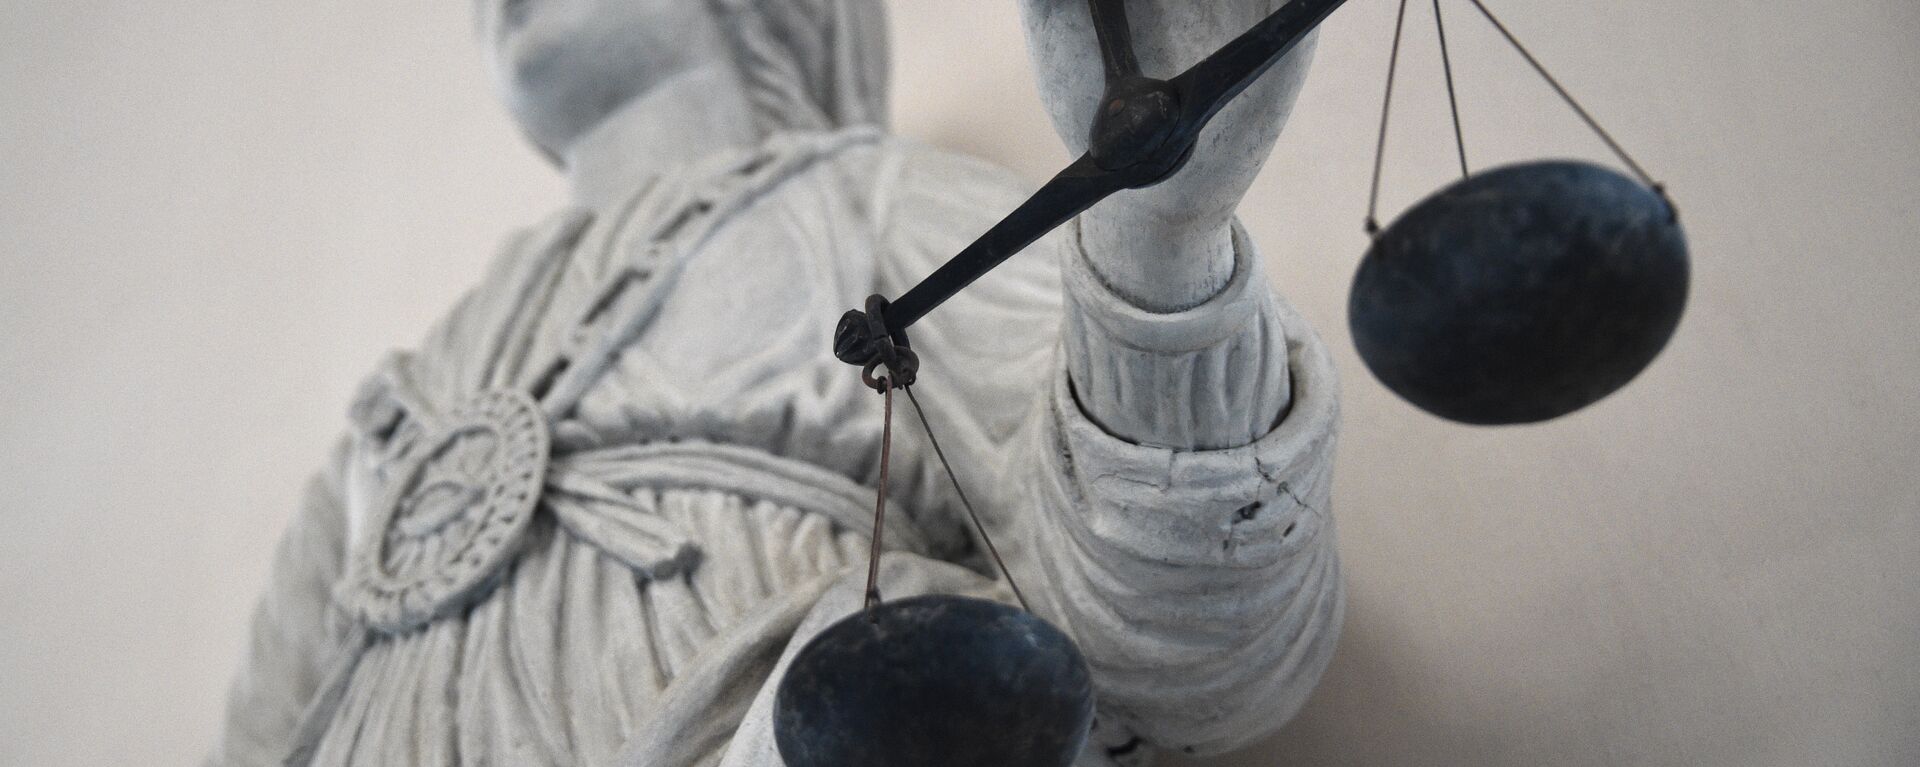 Статуя богини правосудия Фемиды. Архивное фото - Sputnik Кыргызстан, 1920, 01.06.2021